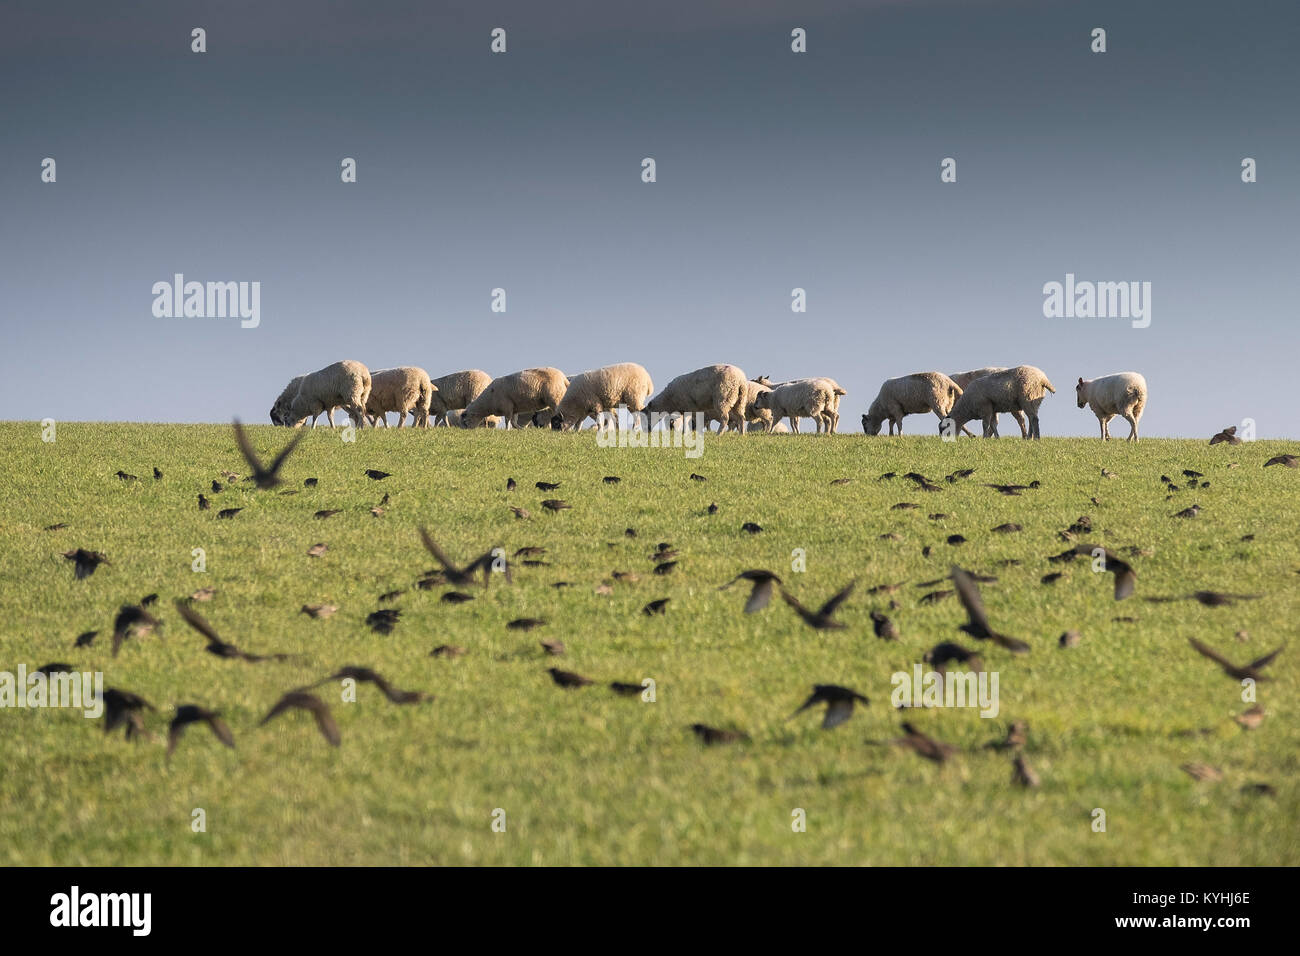 Cornwall Landschaft - ein Schwarm Stare fliegen in einem Feld mit Schafen im Hintergrund. Stockfoto